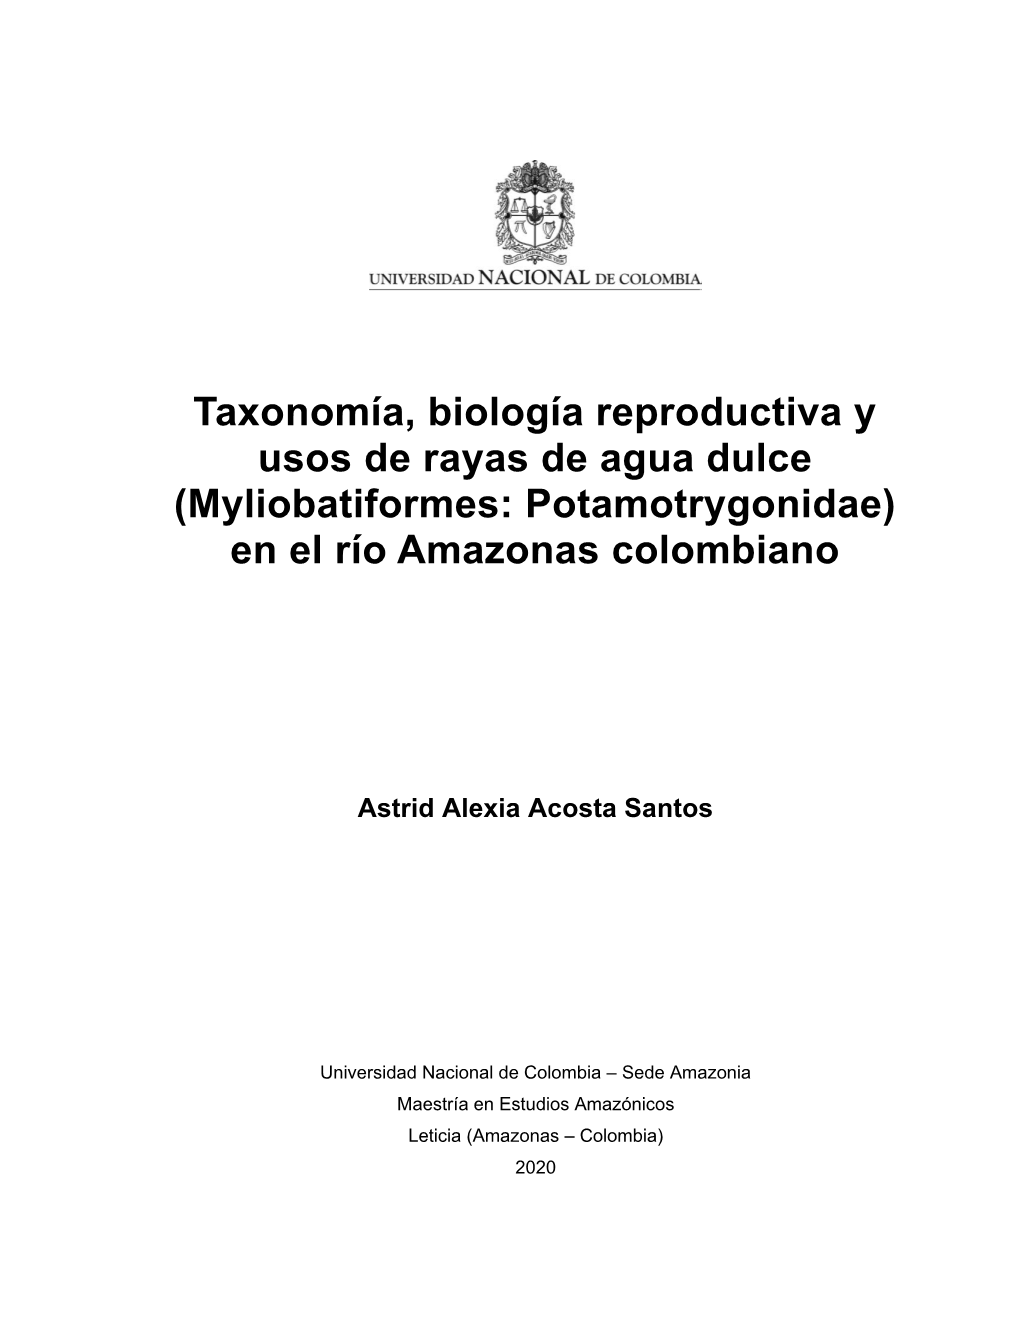 Taxonomía, Biología Reproductiva Y Usos De Rayas De Agua Dulce (Myliobatiformes: Potamotrygonidae) En El Río Amazonas Colombiano